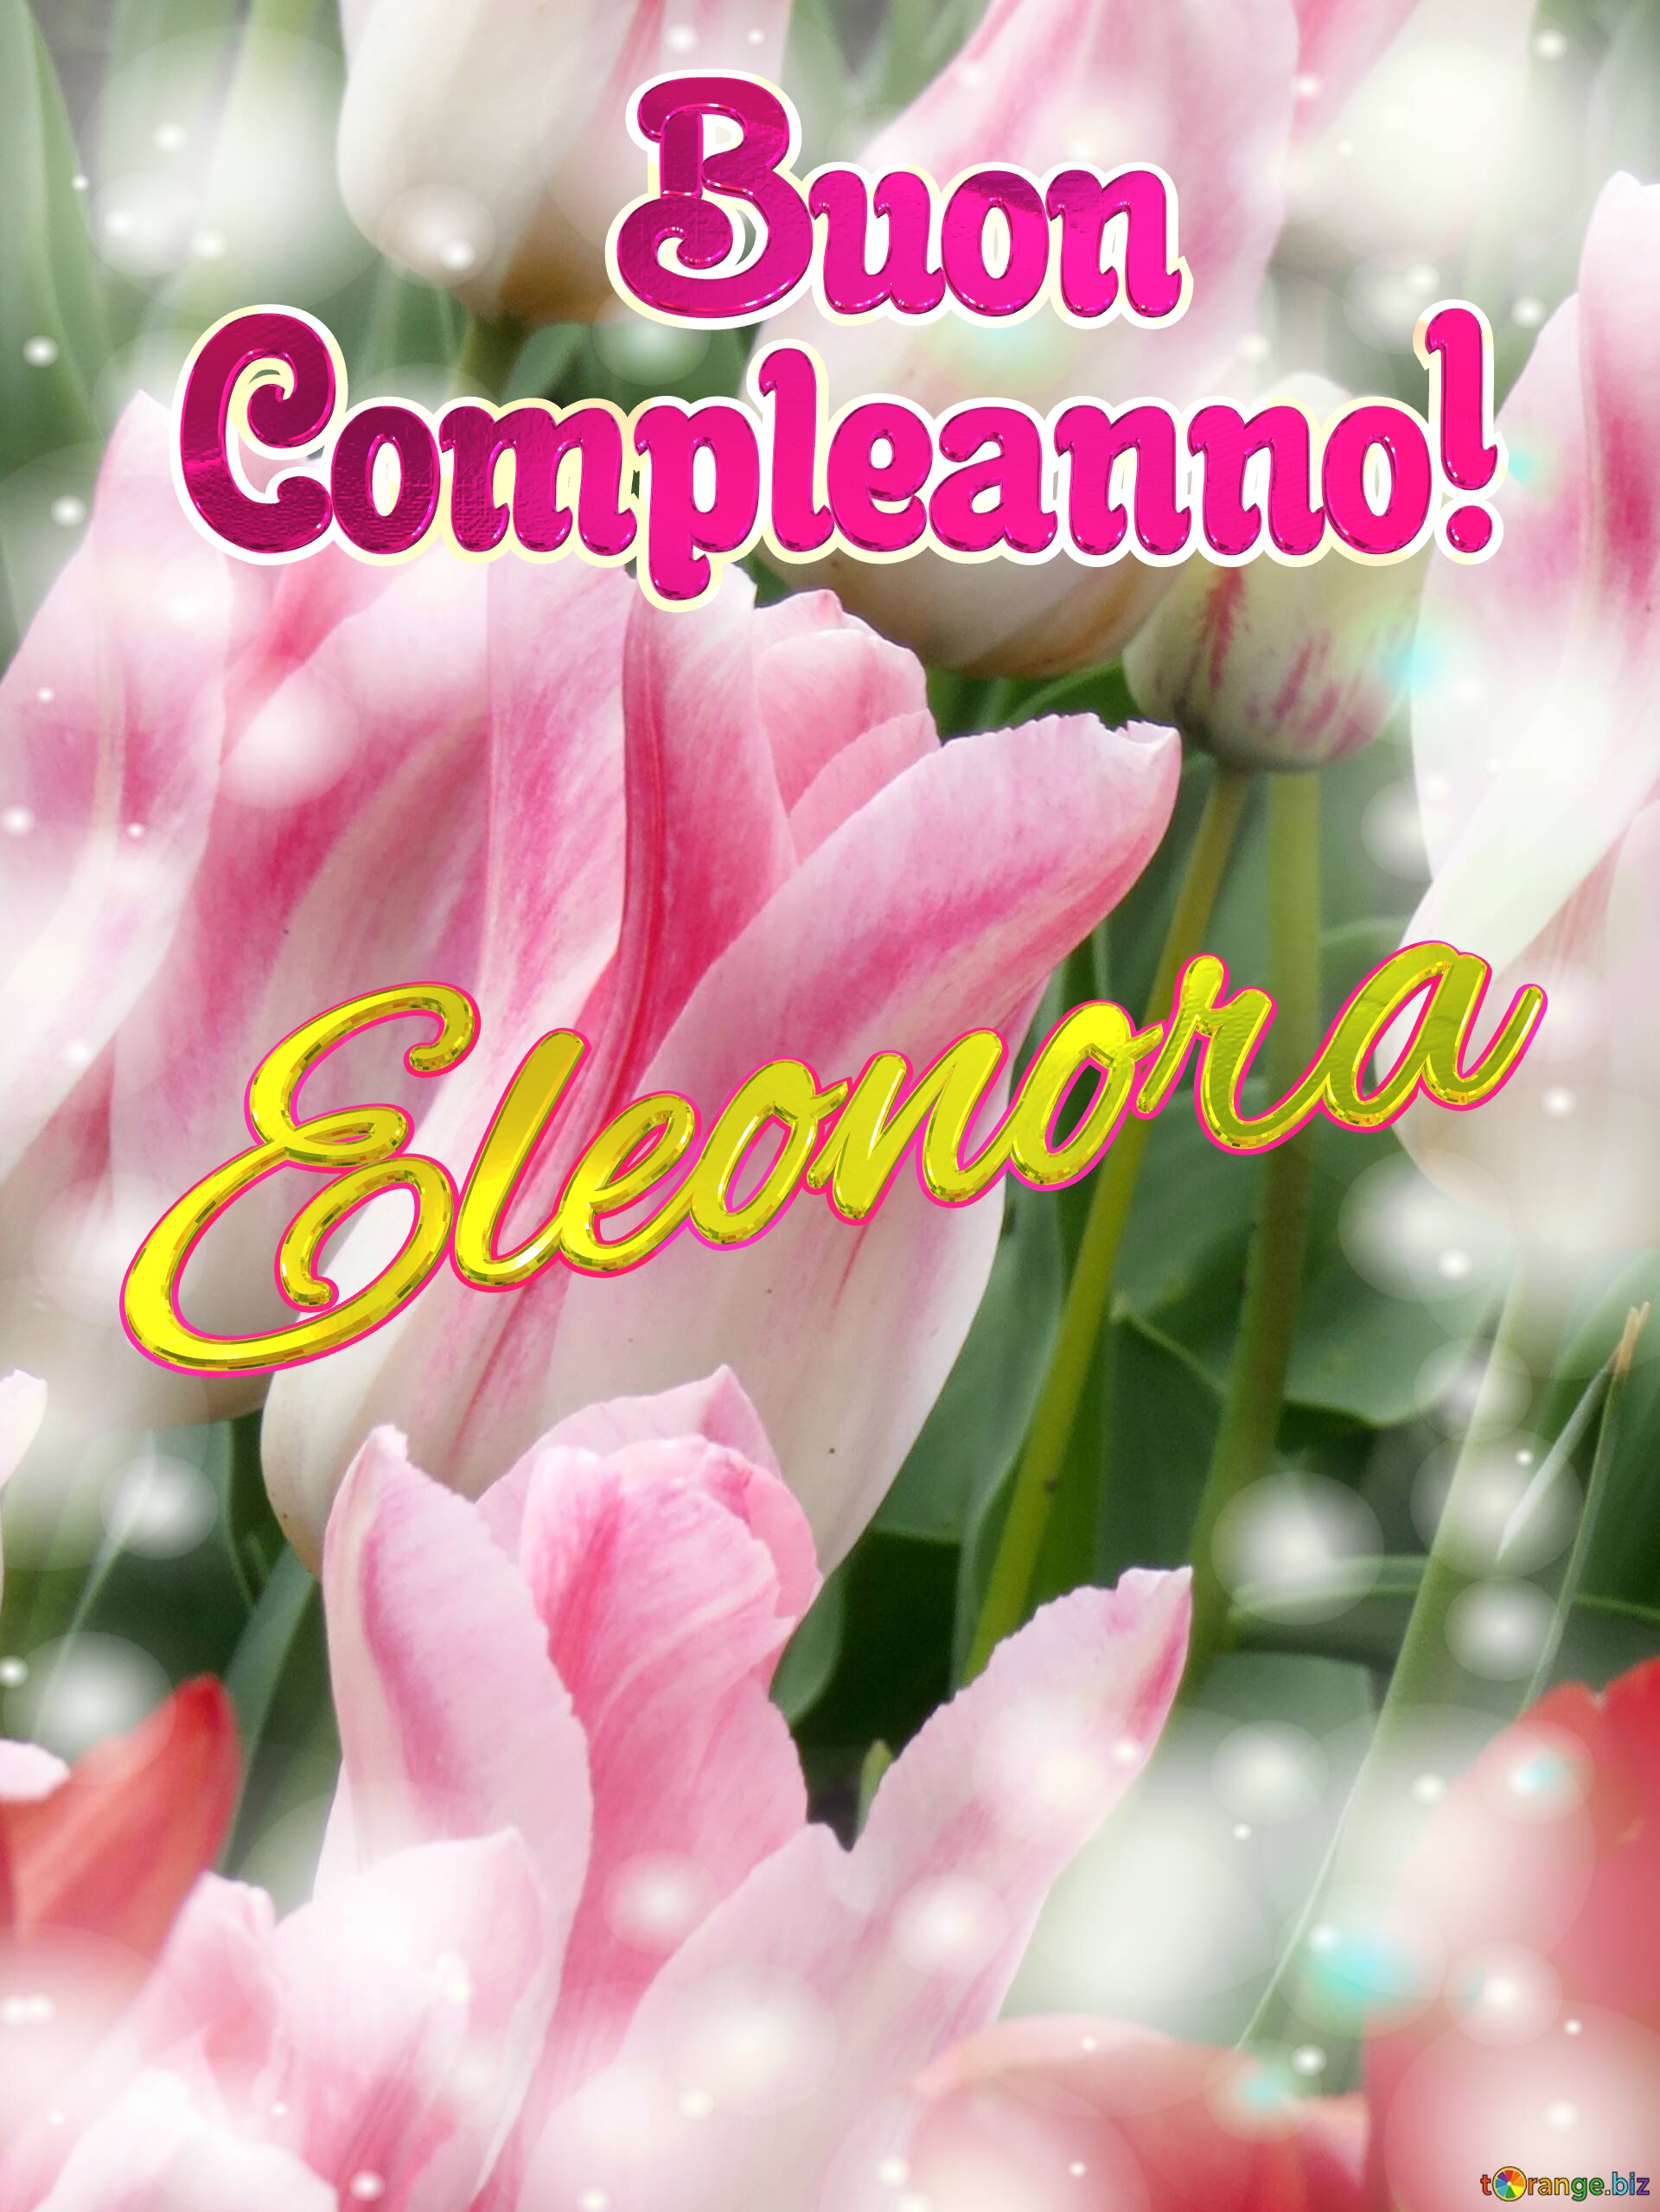       Buon  Compleanno! Eleonora  Buona primavera, che questi tulipani ti portino la speranza e la felicità. №0